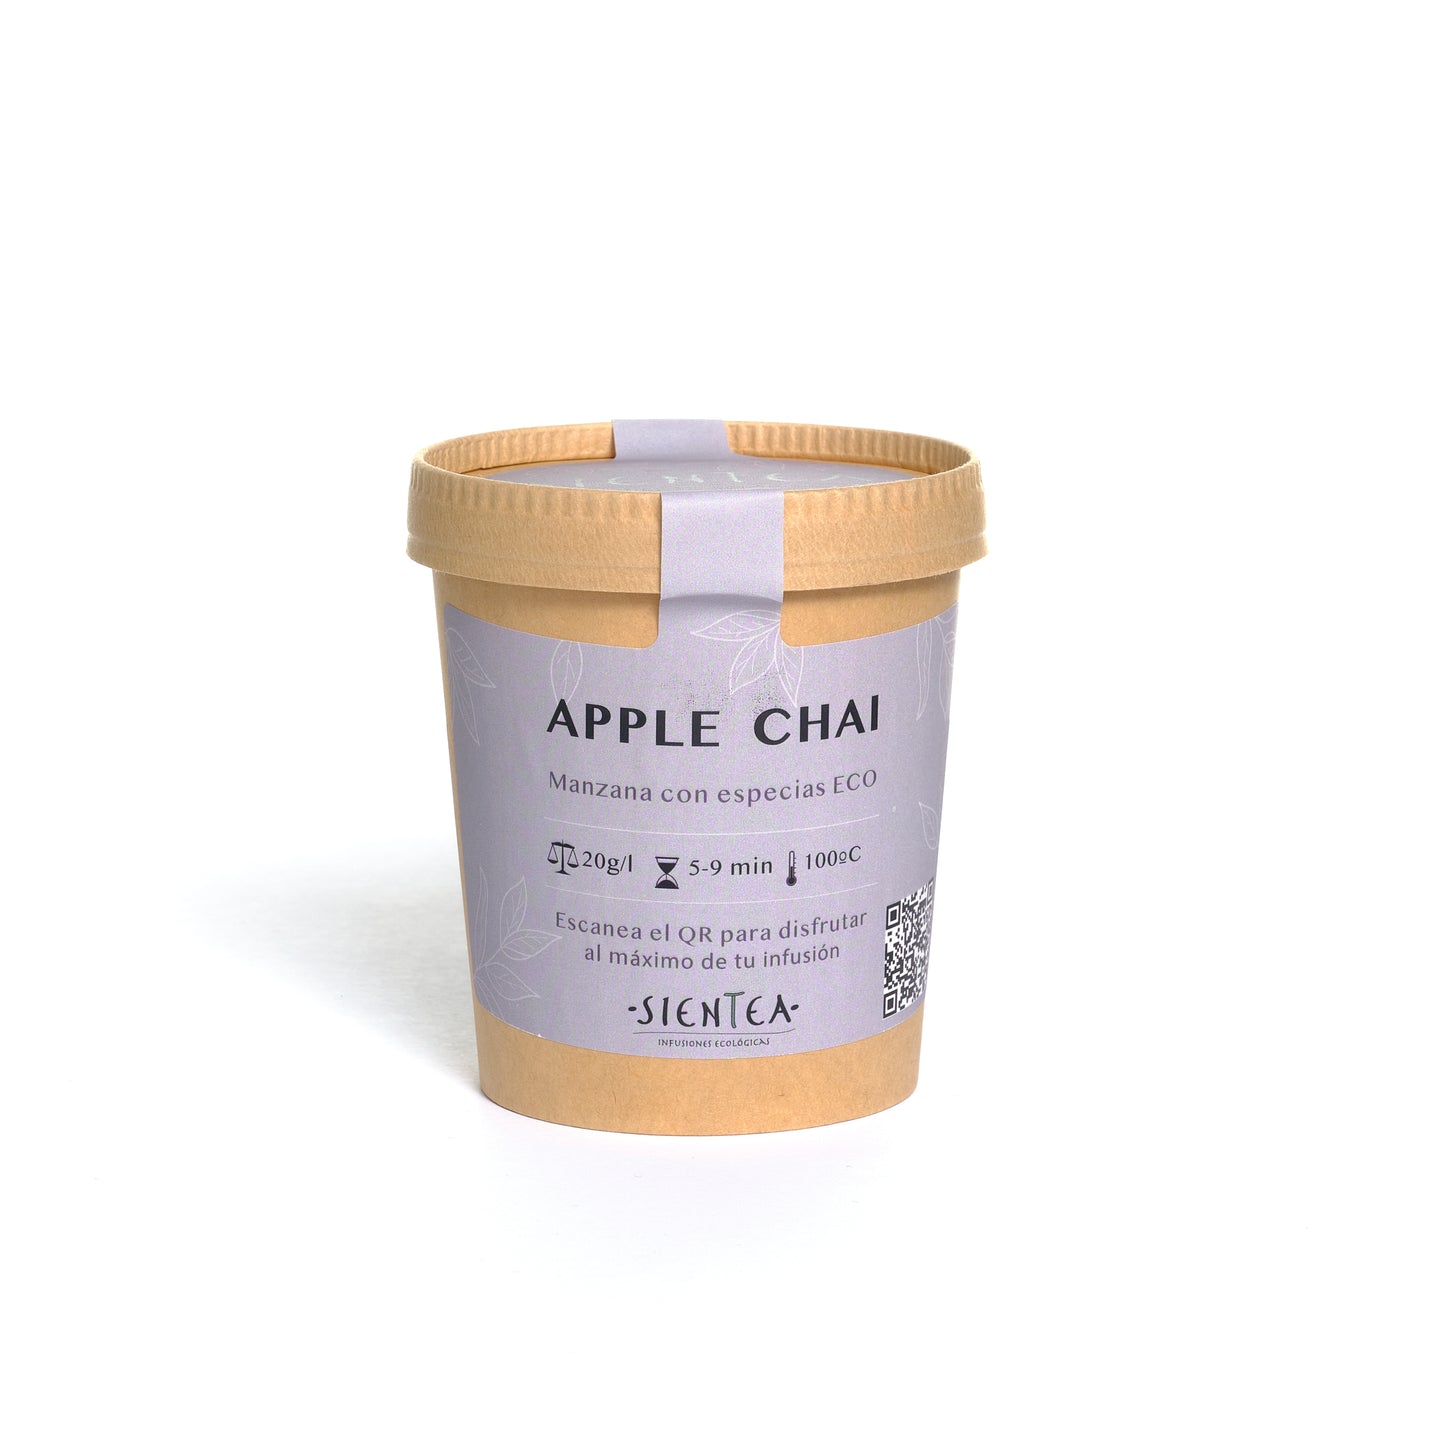 APPLE CHAI - Infusión de Manzana con especias ECO - 100g